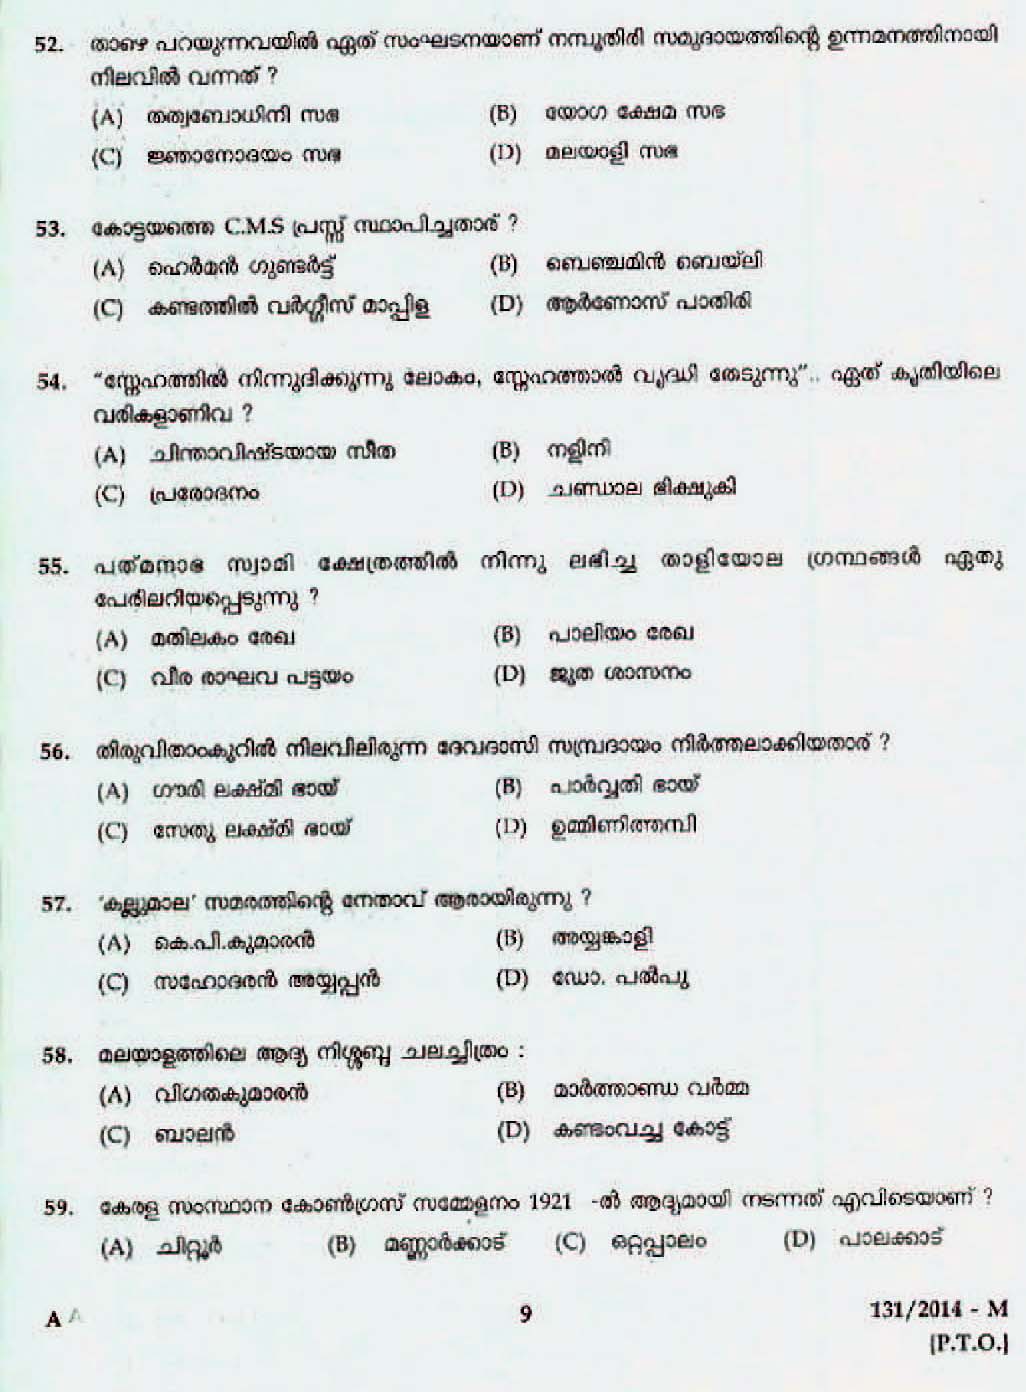 Kerala Last Grade Servants Exam 2014 Question Paper Code 1312014 M 7